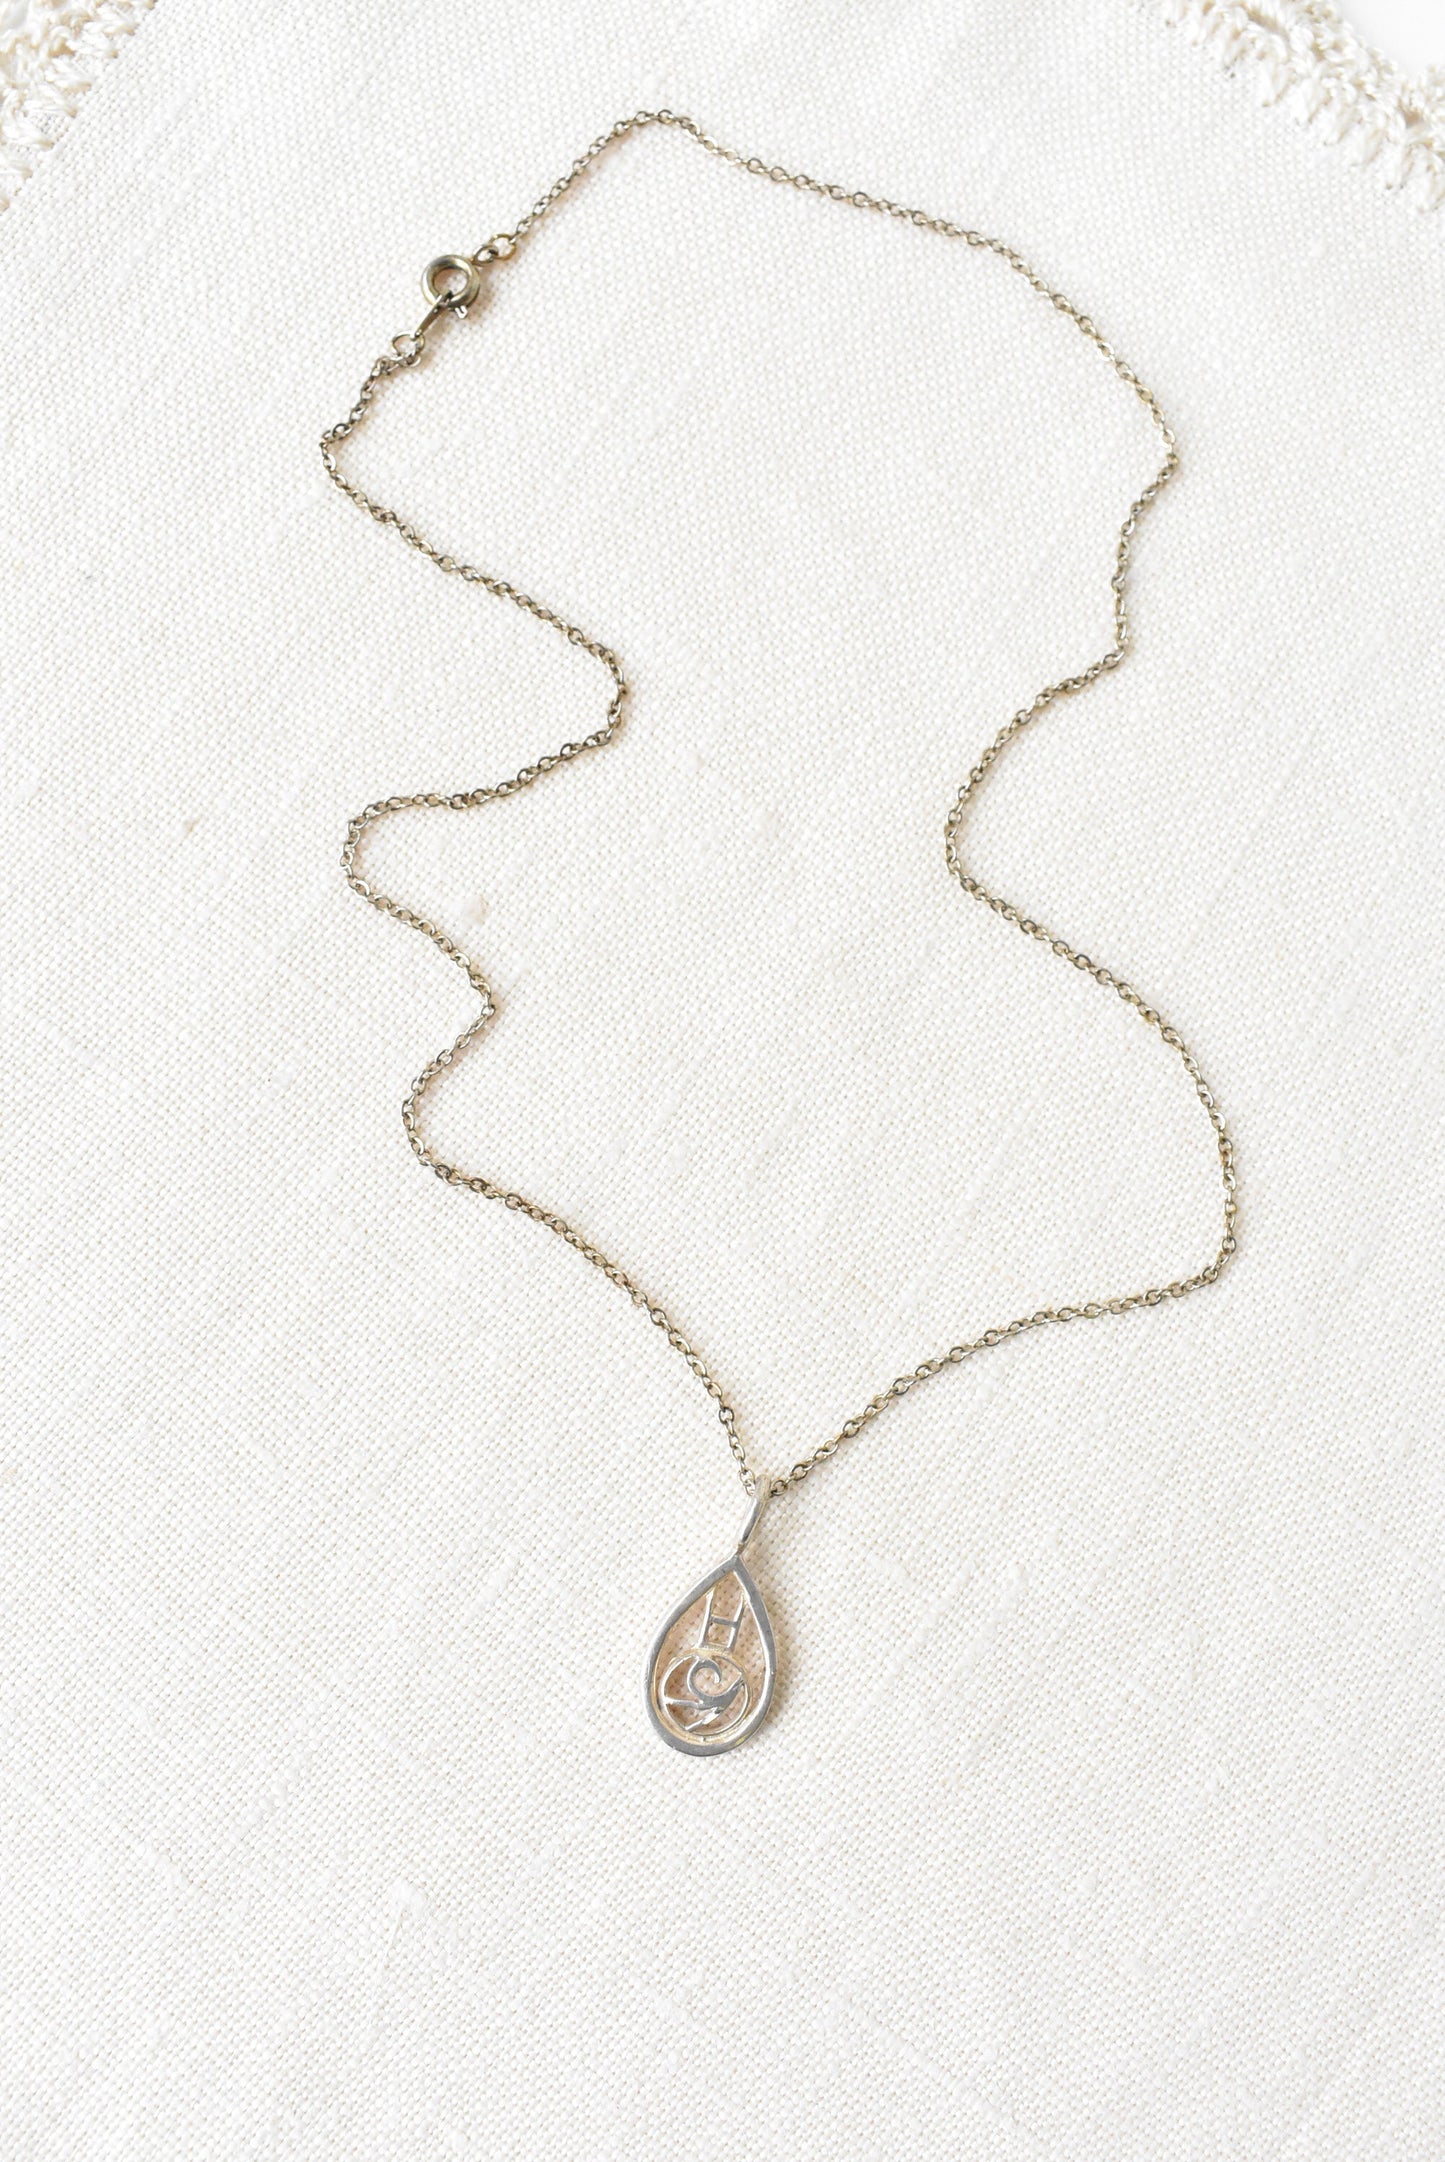 Sterling silver teardrop pendant